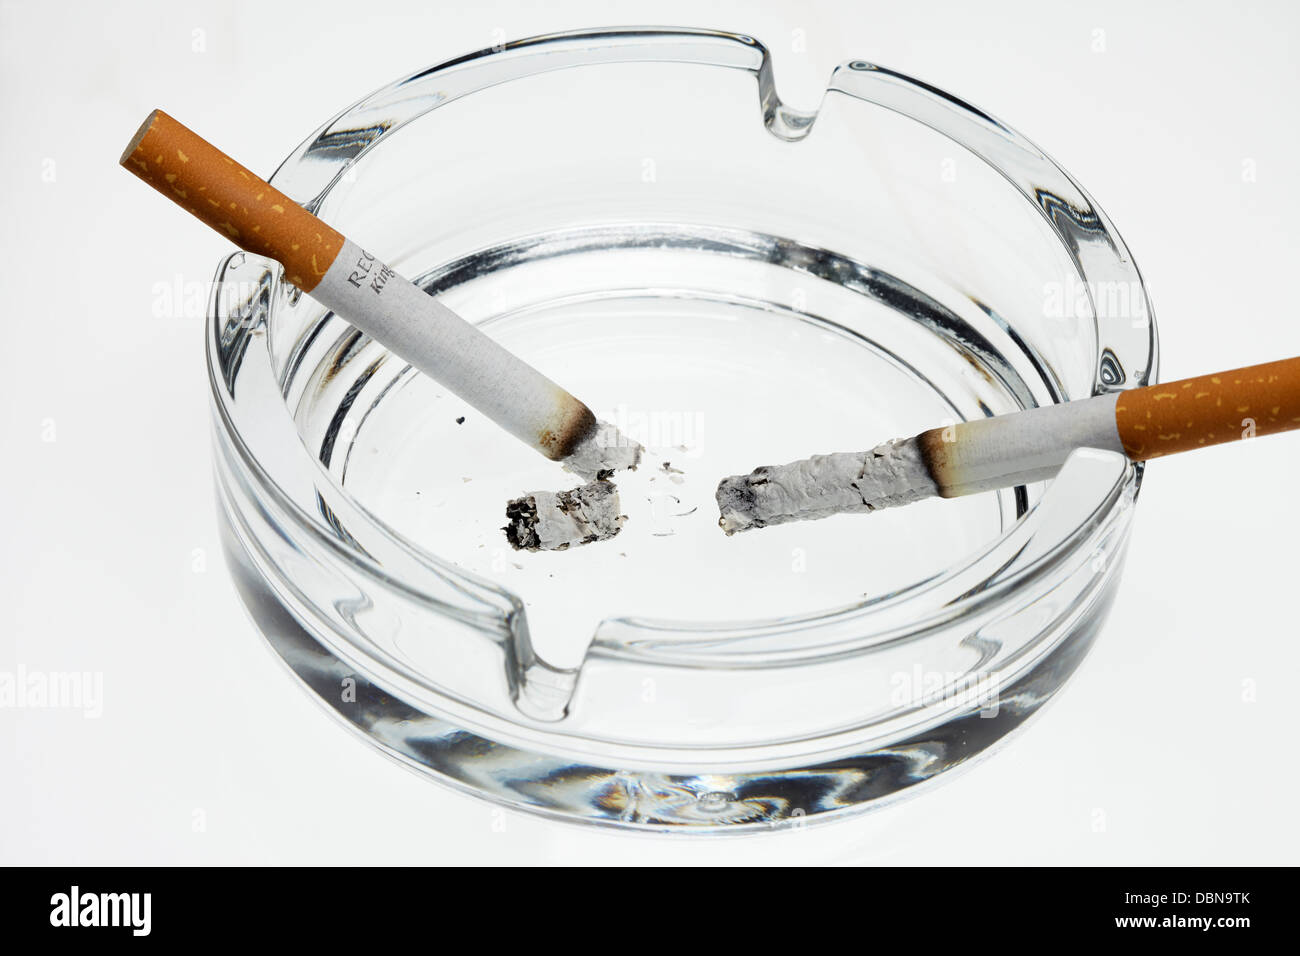 Ashtray and burning cigarettes on a white background Stock Photo